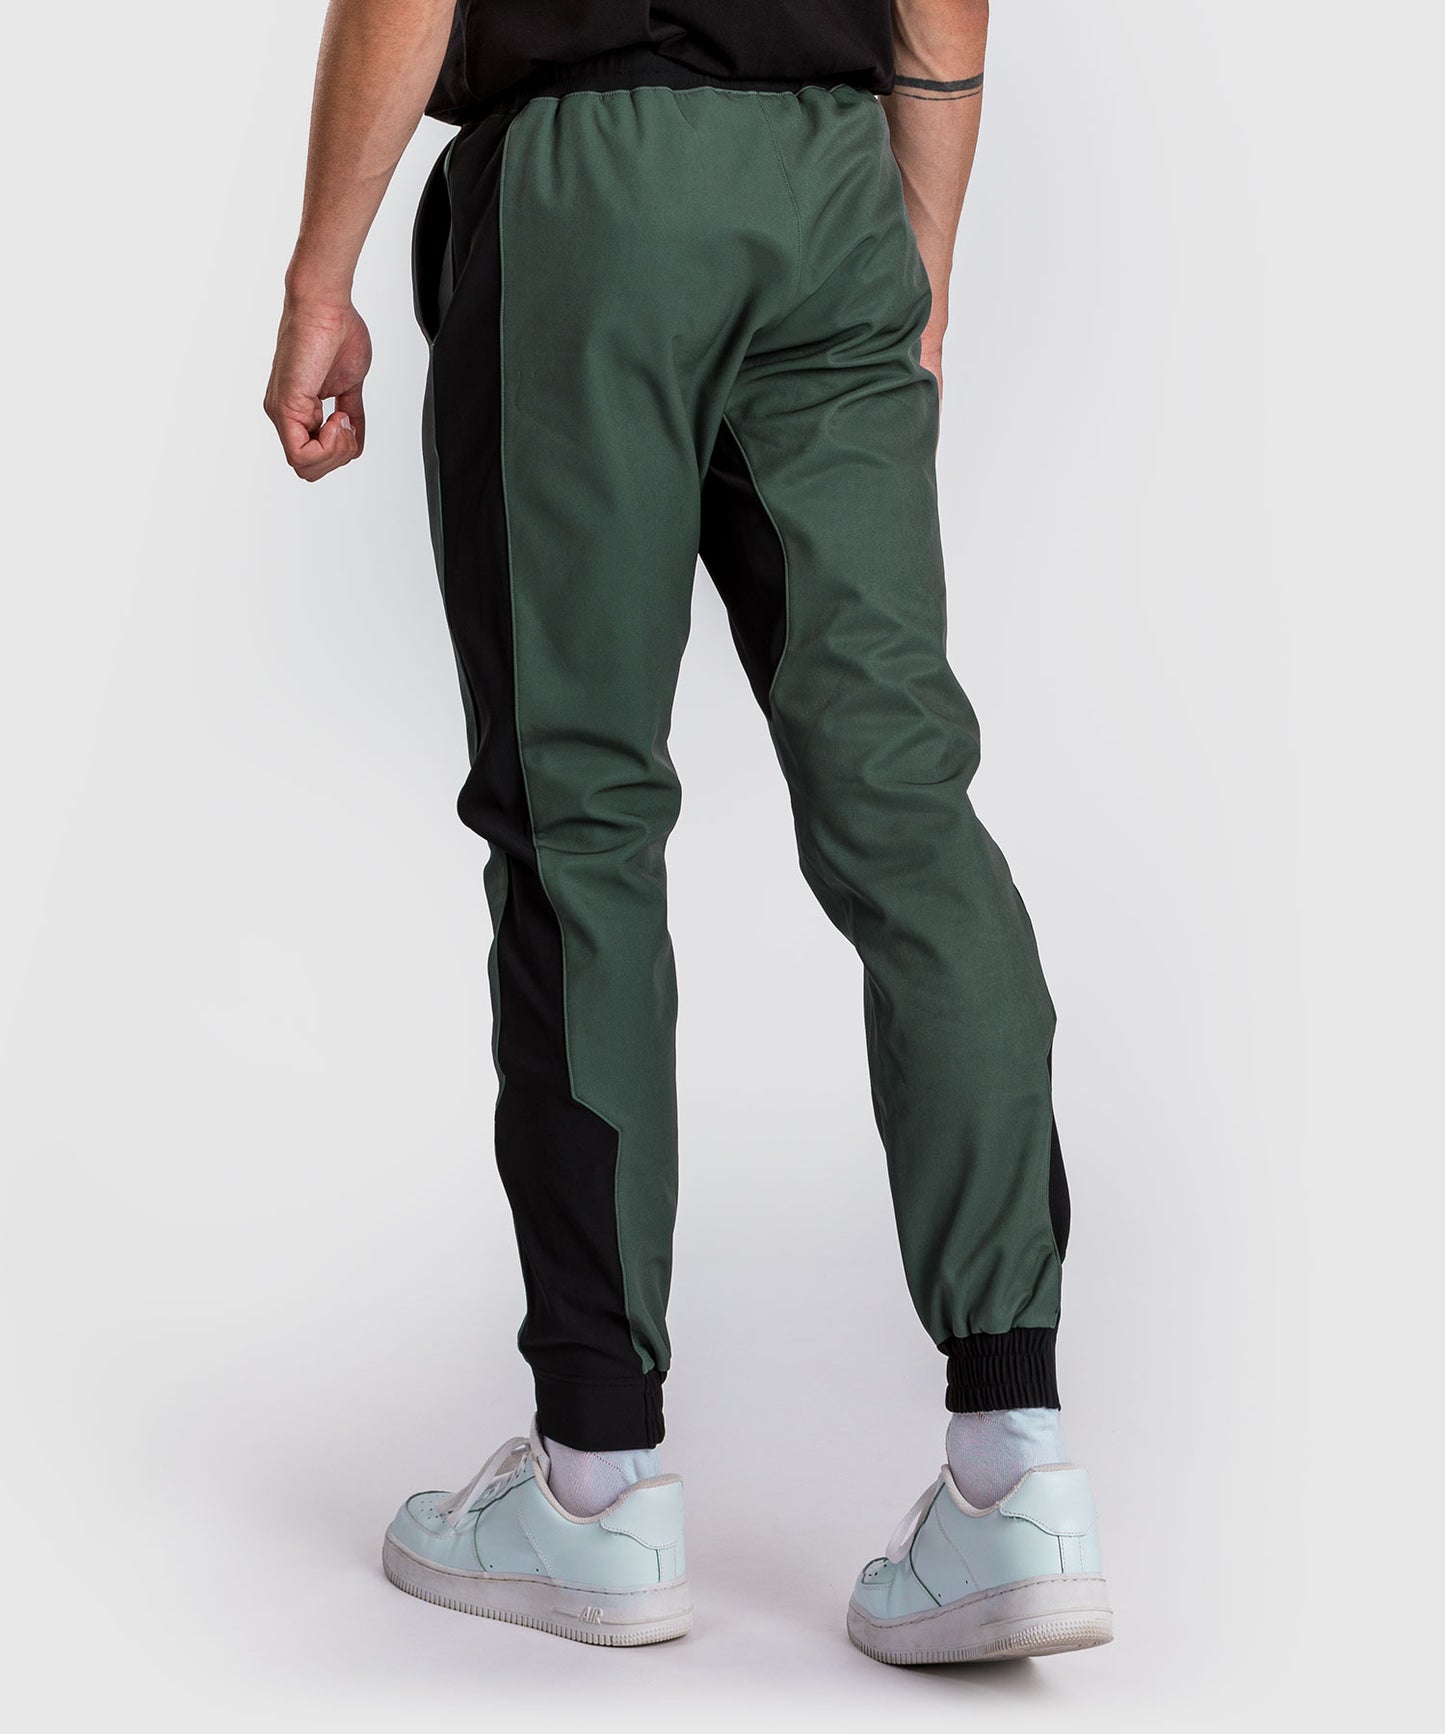 Pantalon de jogging Venum Laser 3.0 - Noir/Kaki